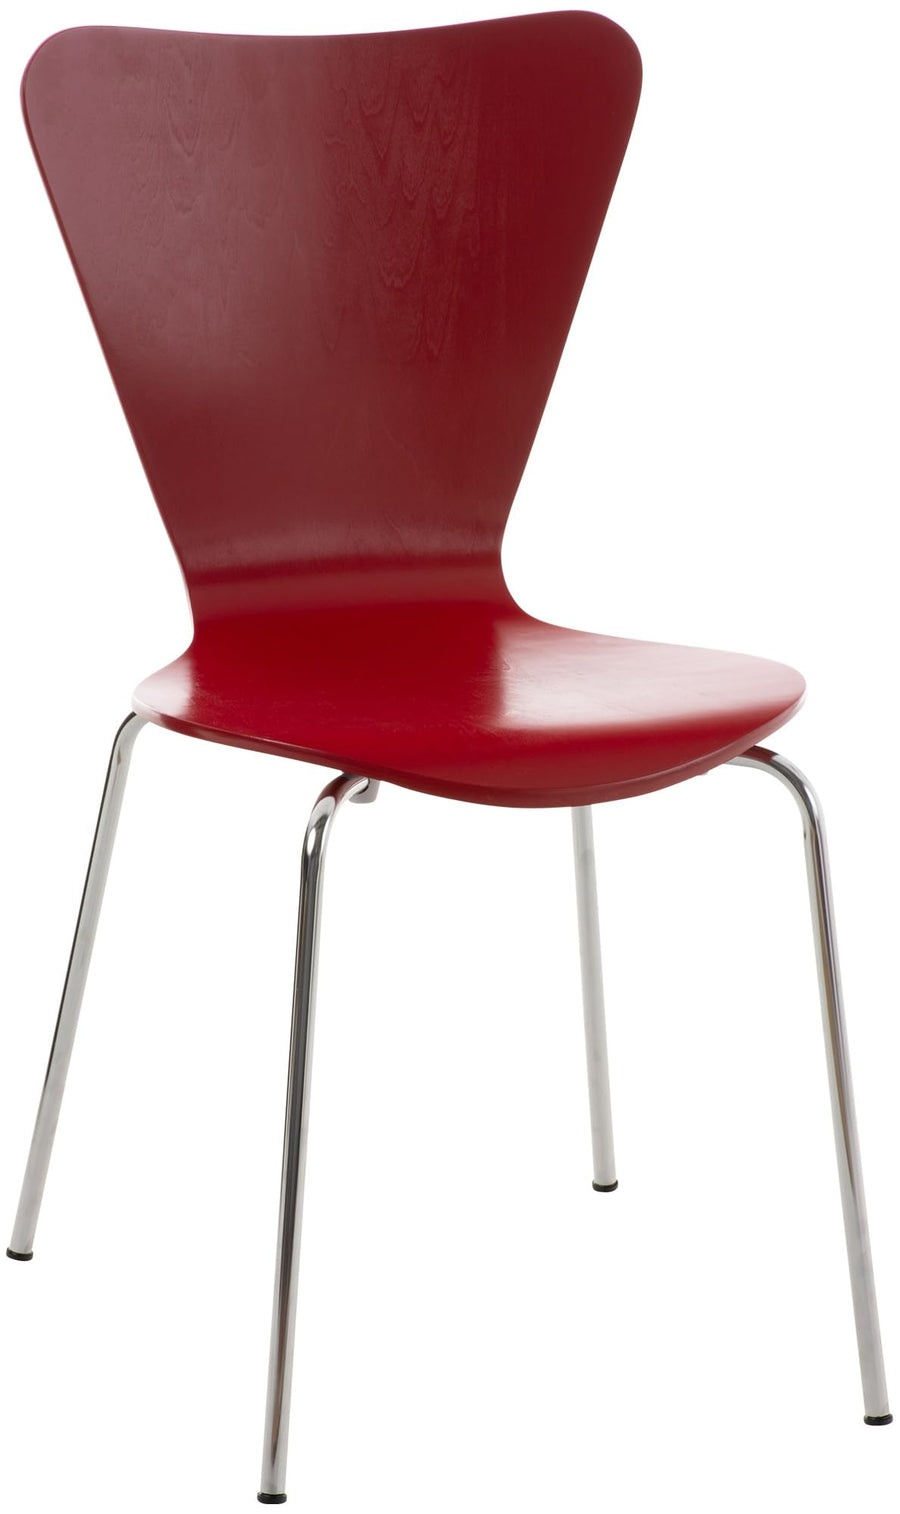 Chaise Empilable Calisto en Bois - Assise Ergonomique - Chaise de Salle d'Attente en Bois Chaise, Hauteur Assise 45 cm -Couleurs au Choix:, Couleur:Rouge